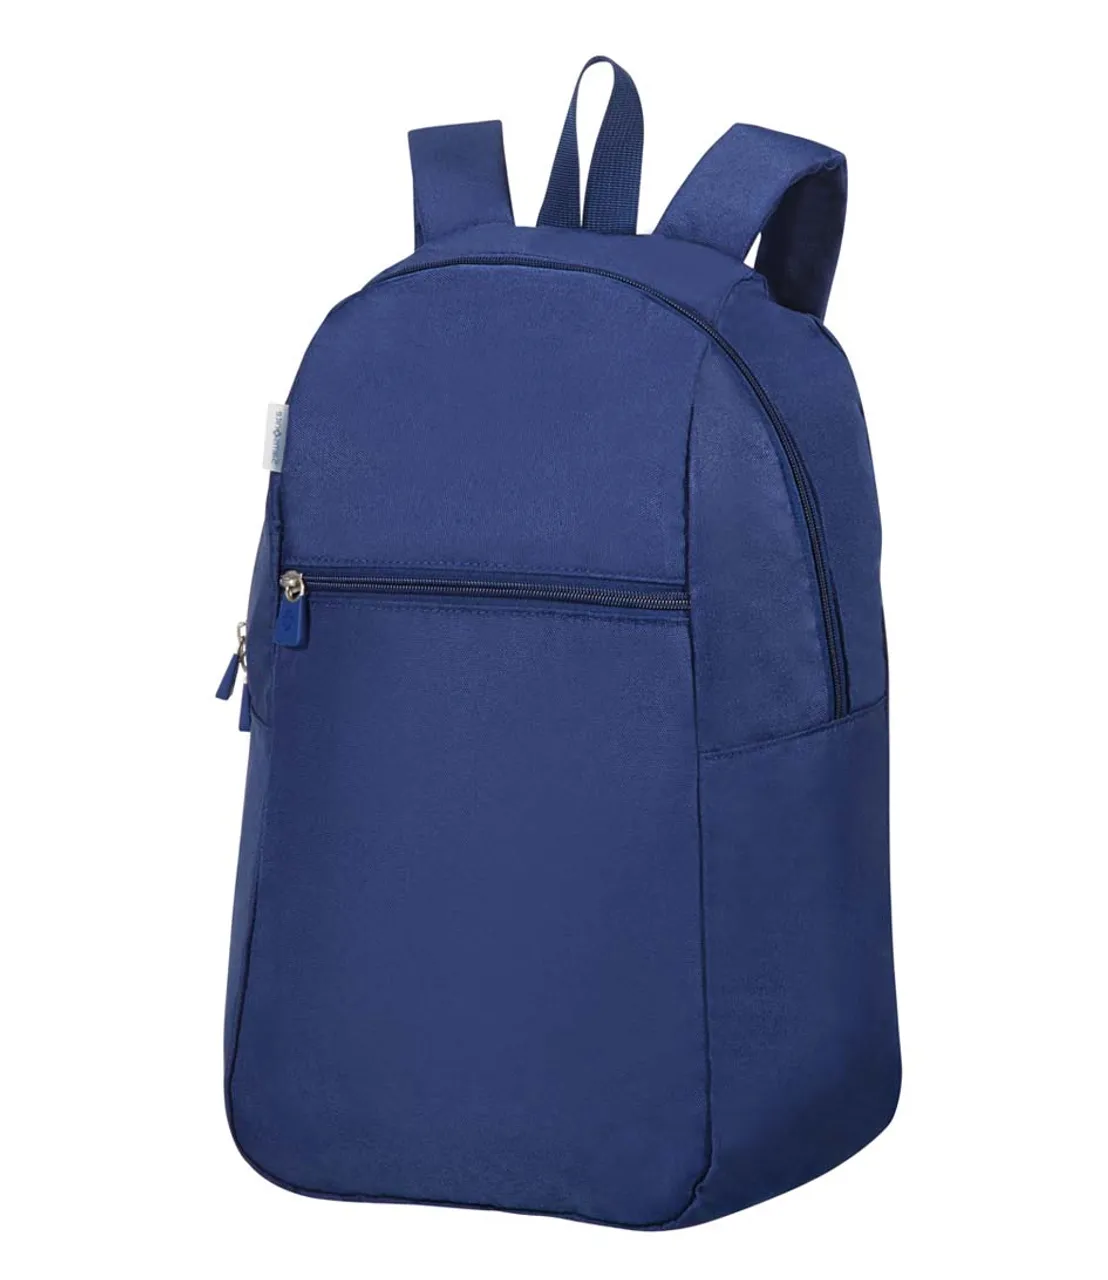 Global Ta Foldable Backpack